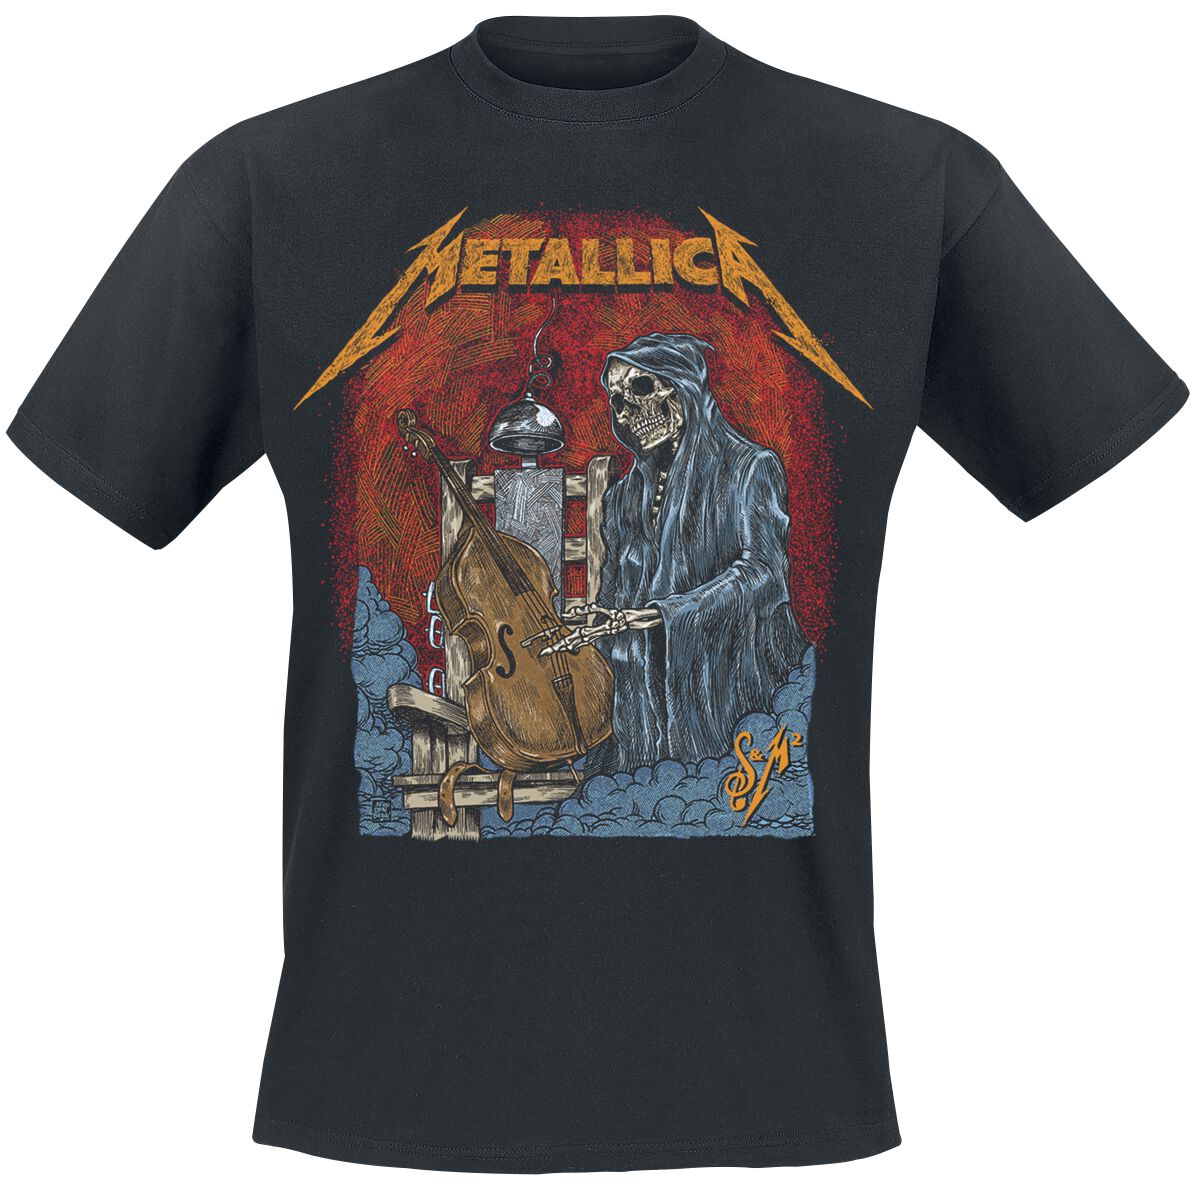 Metallica T-Shirt - S&M2 Cello Reaper - S bis 5XL - für Männer - Größe 3XL - schwarz  - Lizenziertes Merchandise!